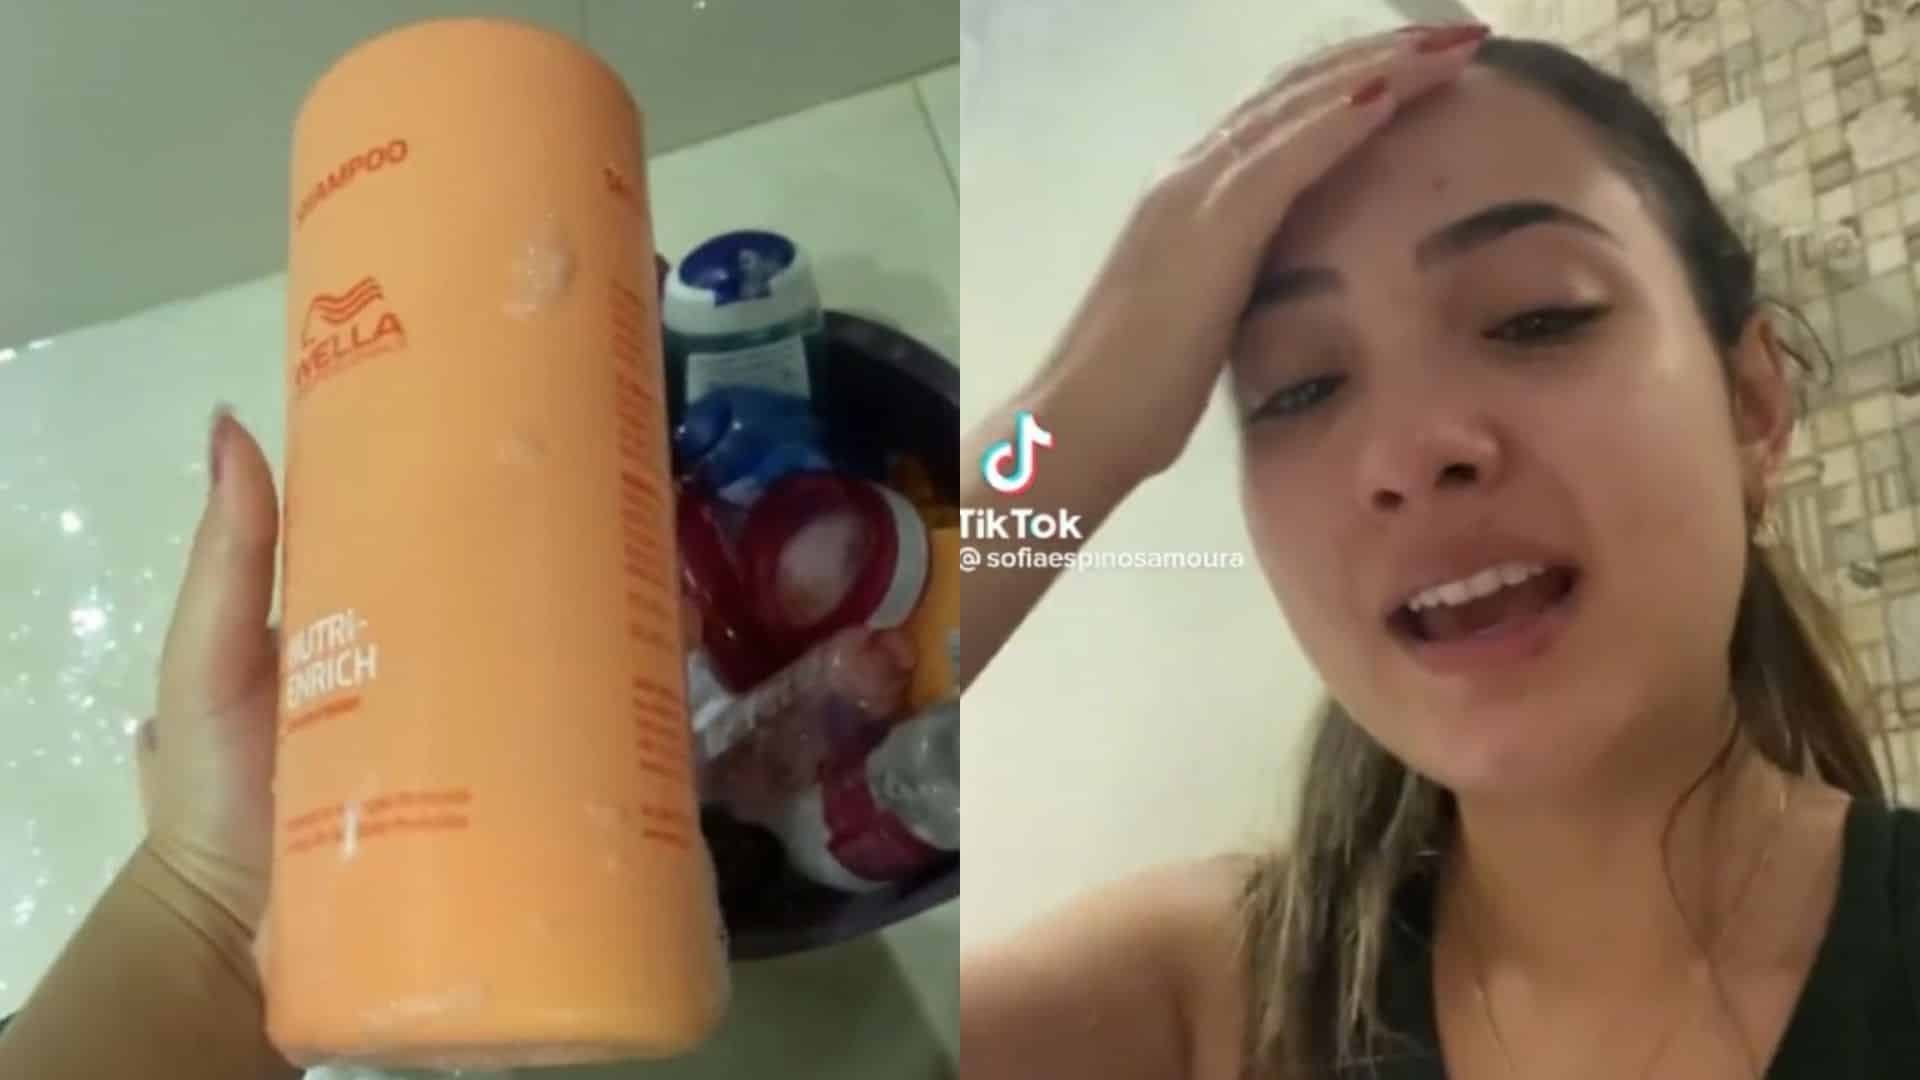 Estudante viraliza ao ver investimento de R$ 700 virar espuma para banho